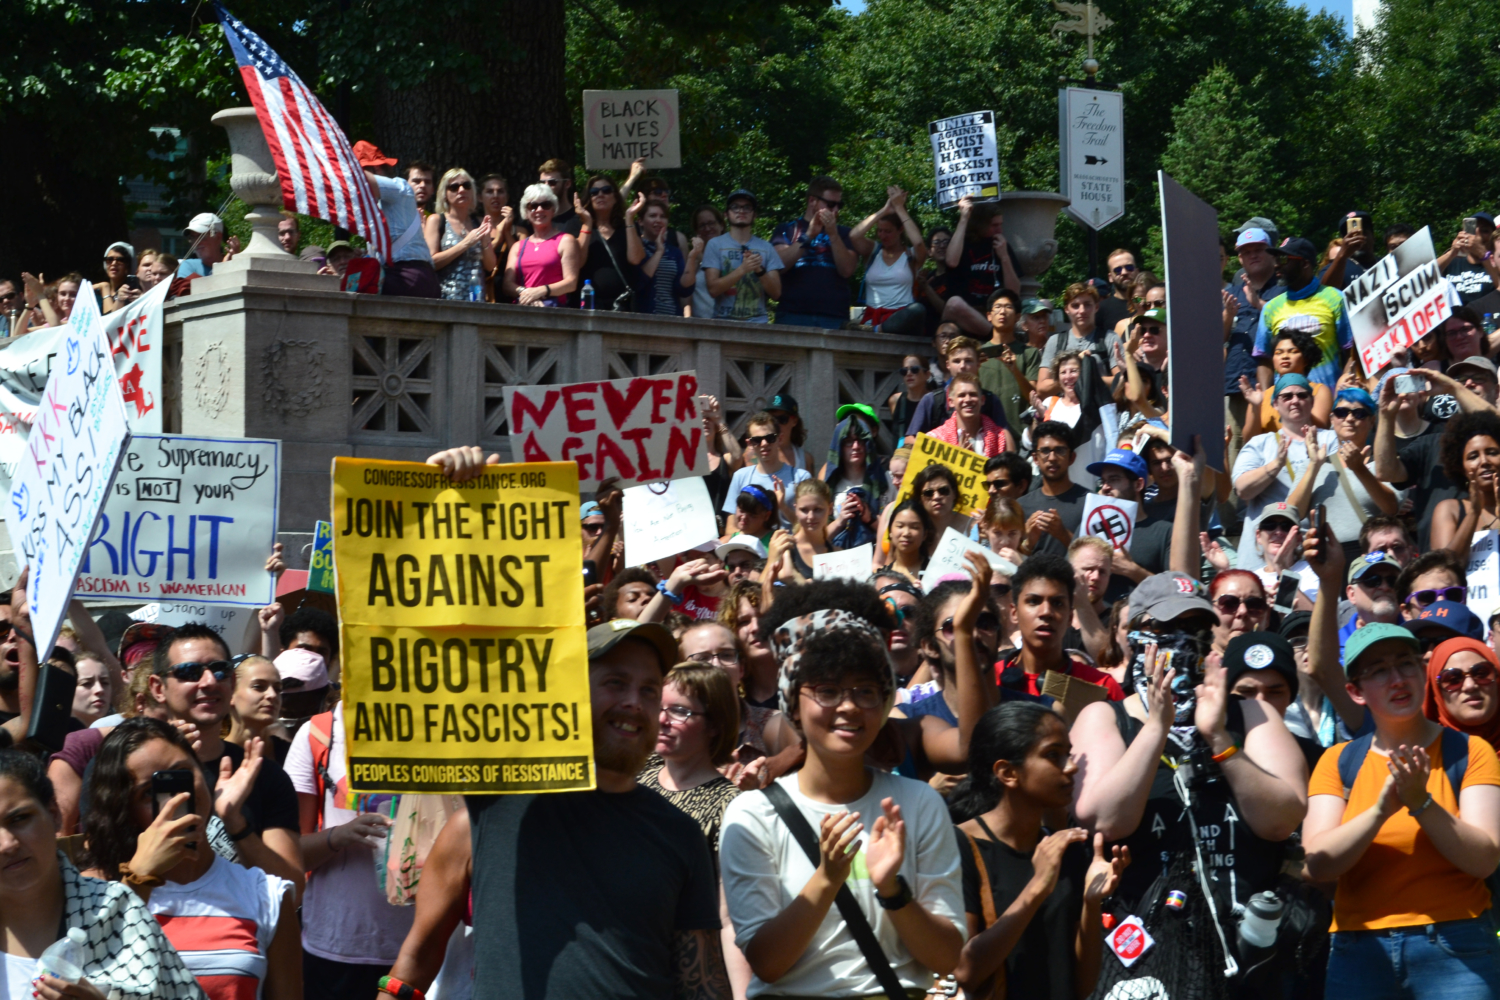 Massive Boston counterprotest denounces white supremacy